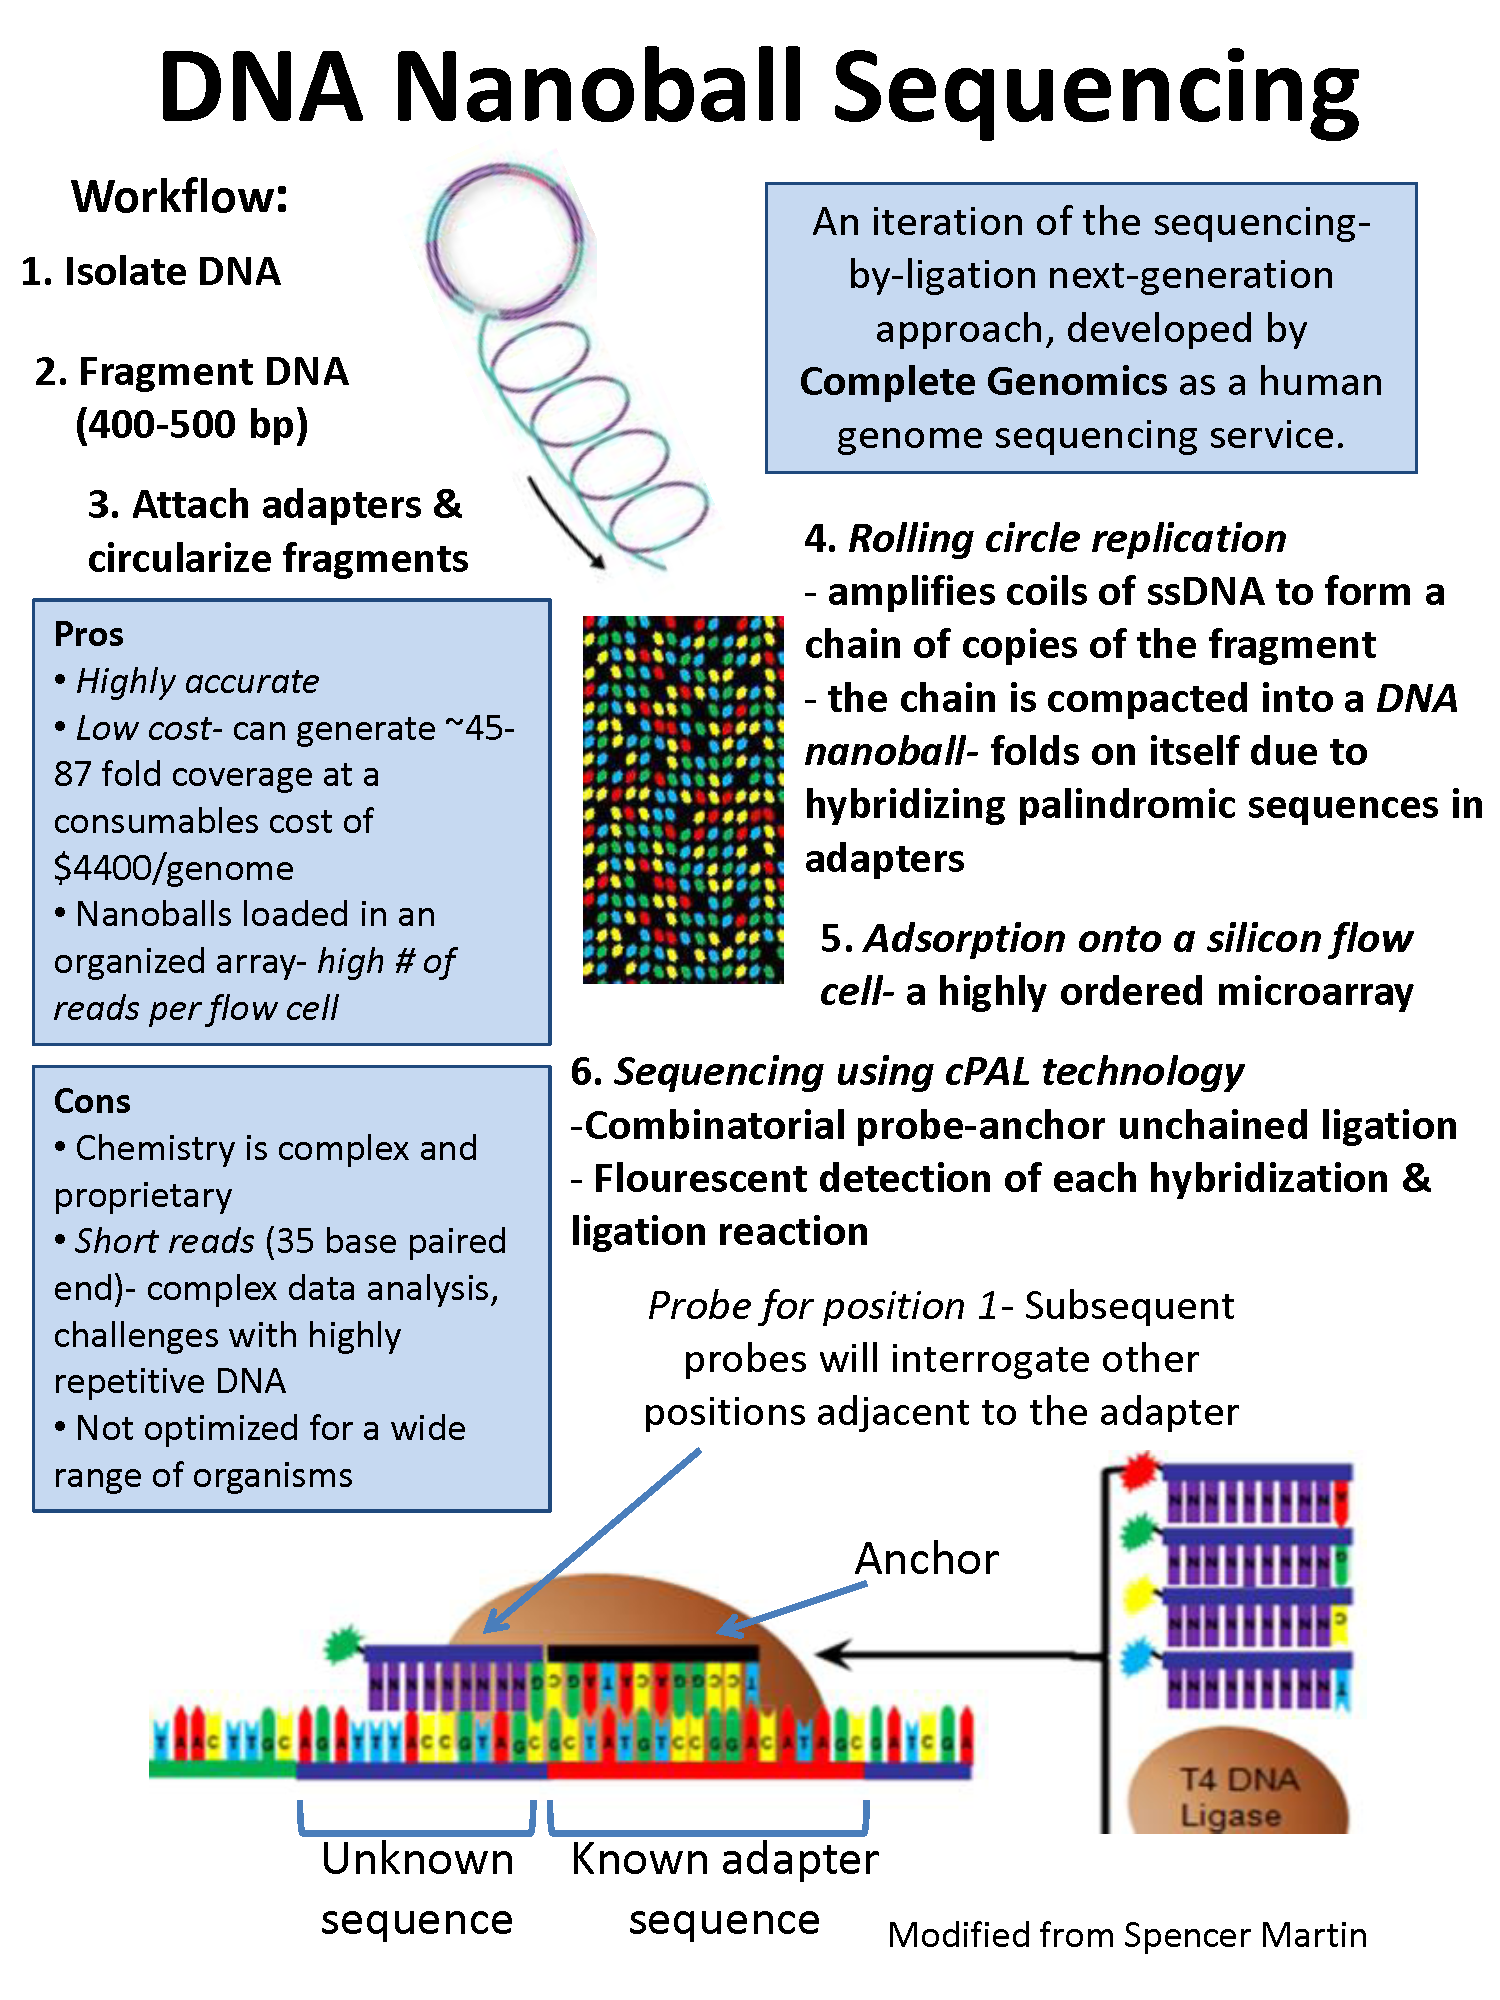 DNA nanoball sequencing